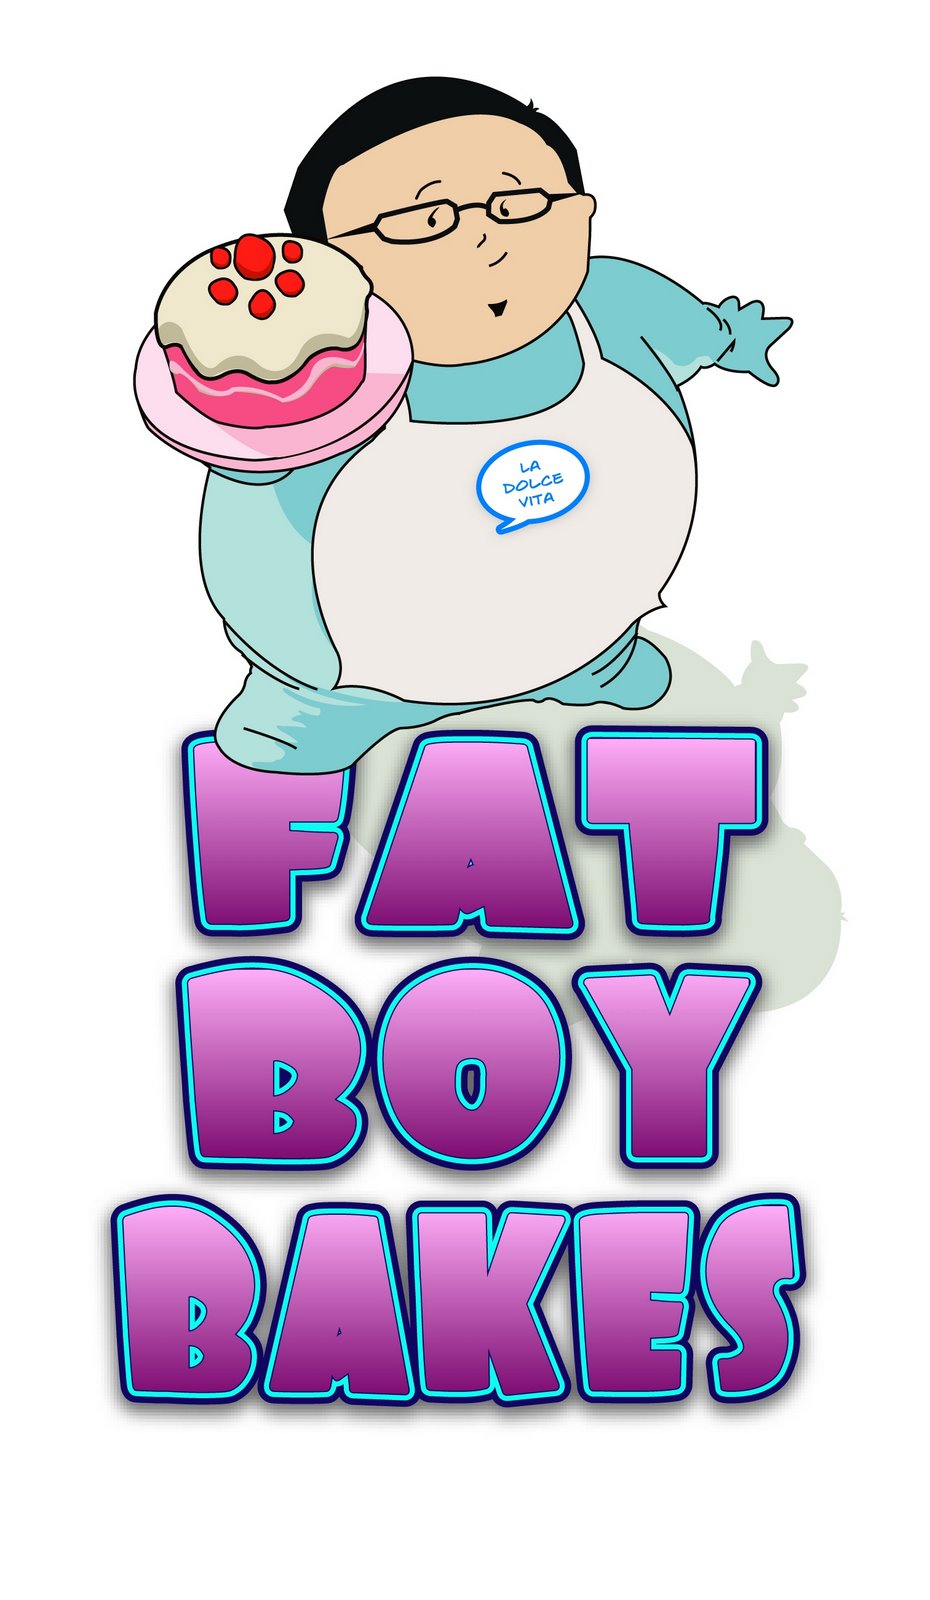 Fatboybakes